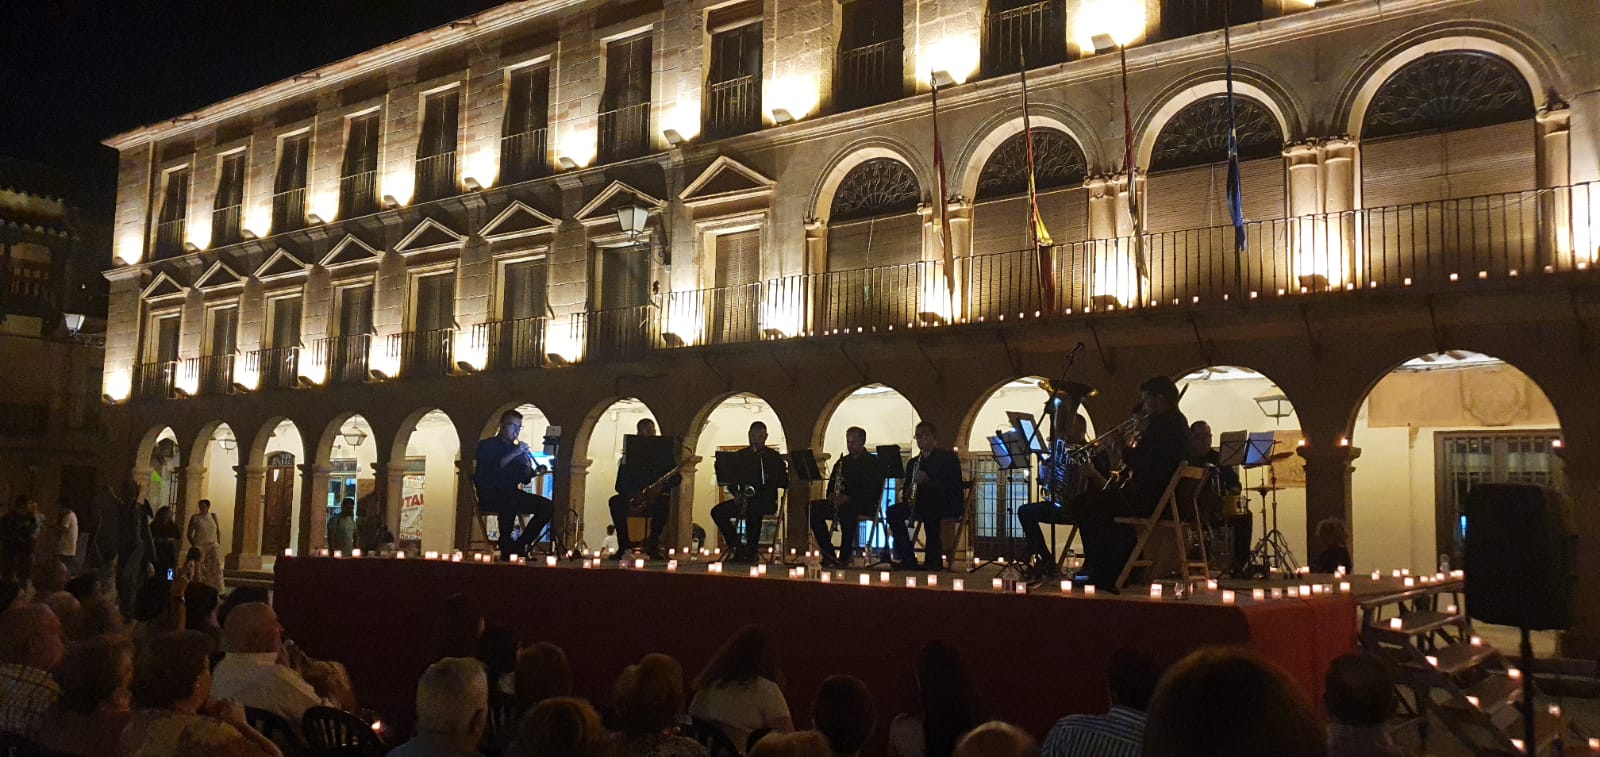 Ensemble Carinfa Wind Band trae música y magia a Villanueva de los Infantes con su espectáculo ‘Nostalgia Musical’ a la luz de las velas